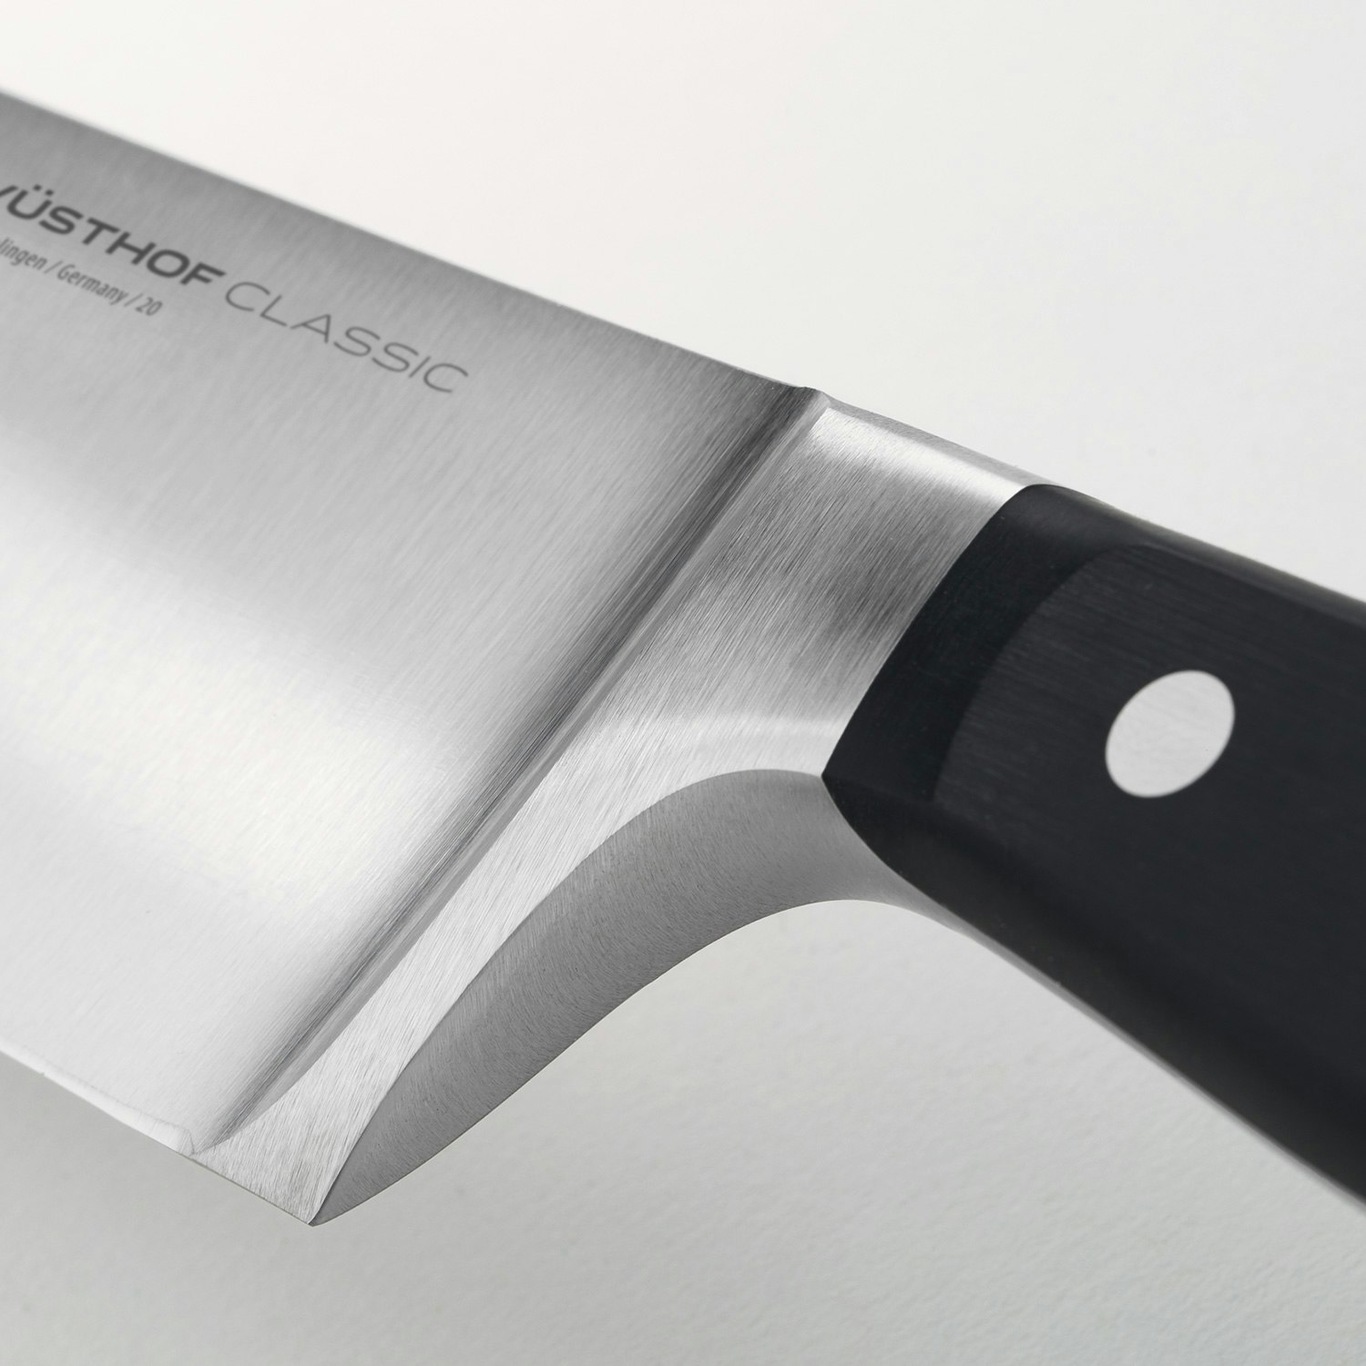 https://royaldesign.com/image/2/wusthof-classic-knife-set-5-pack-2?w=800&quality=80